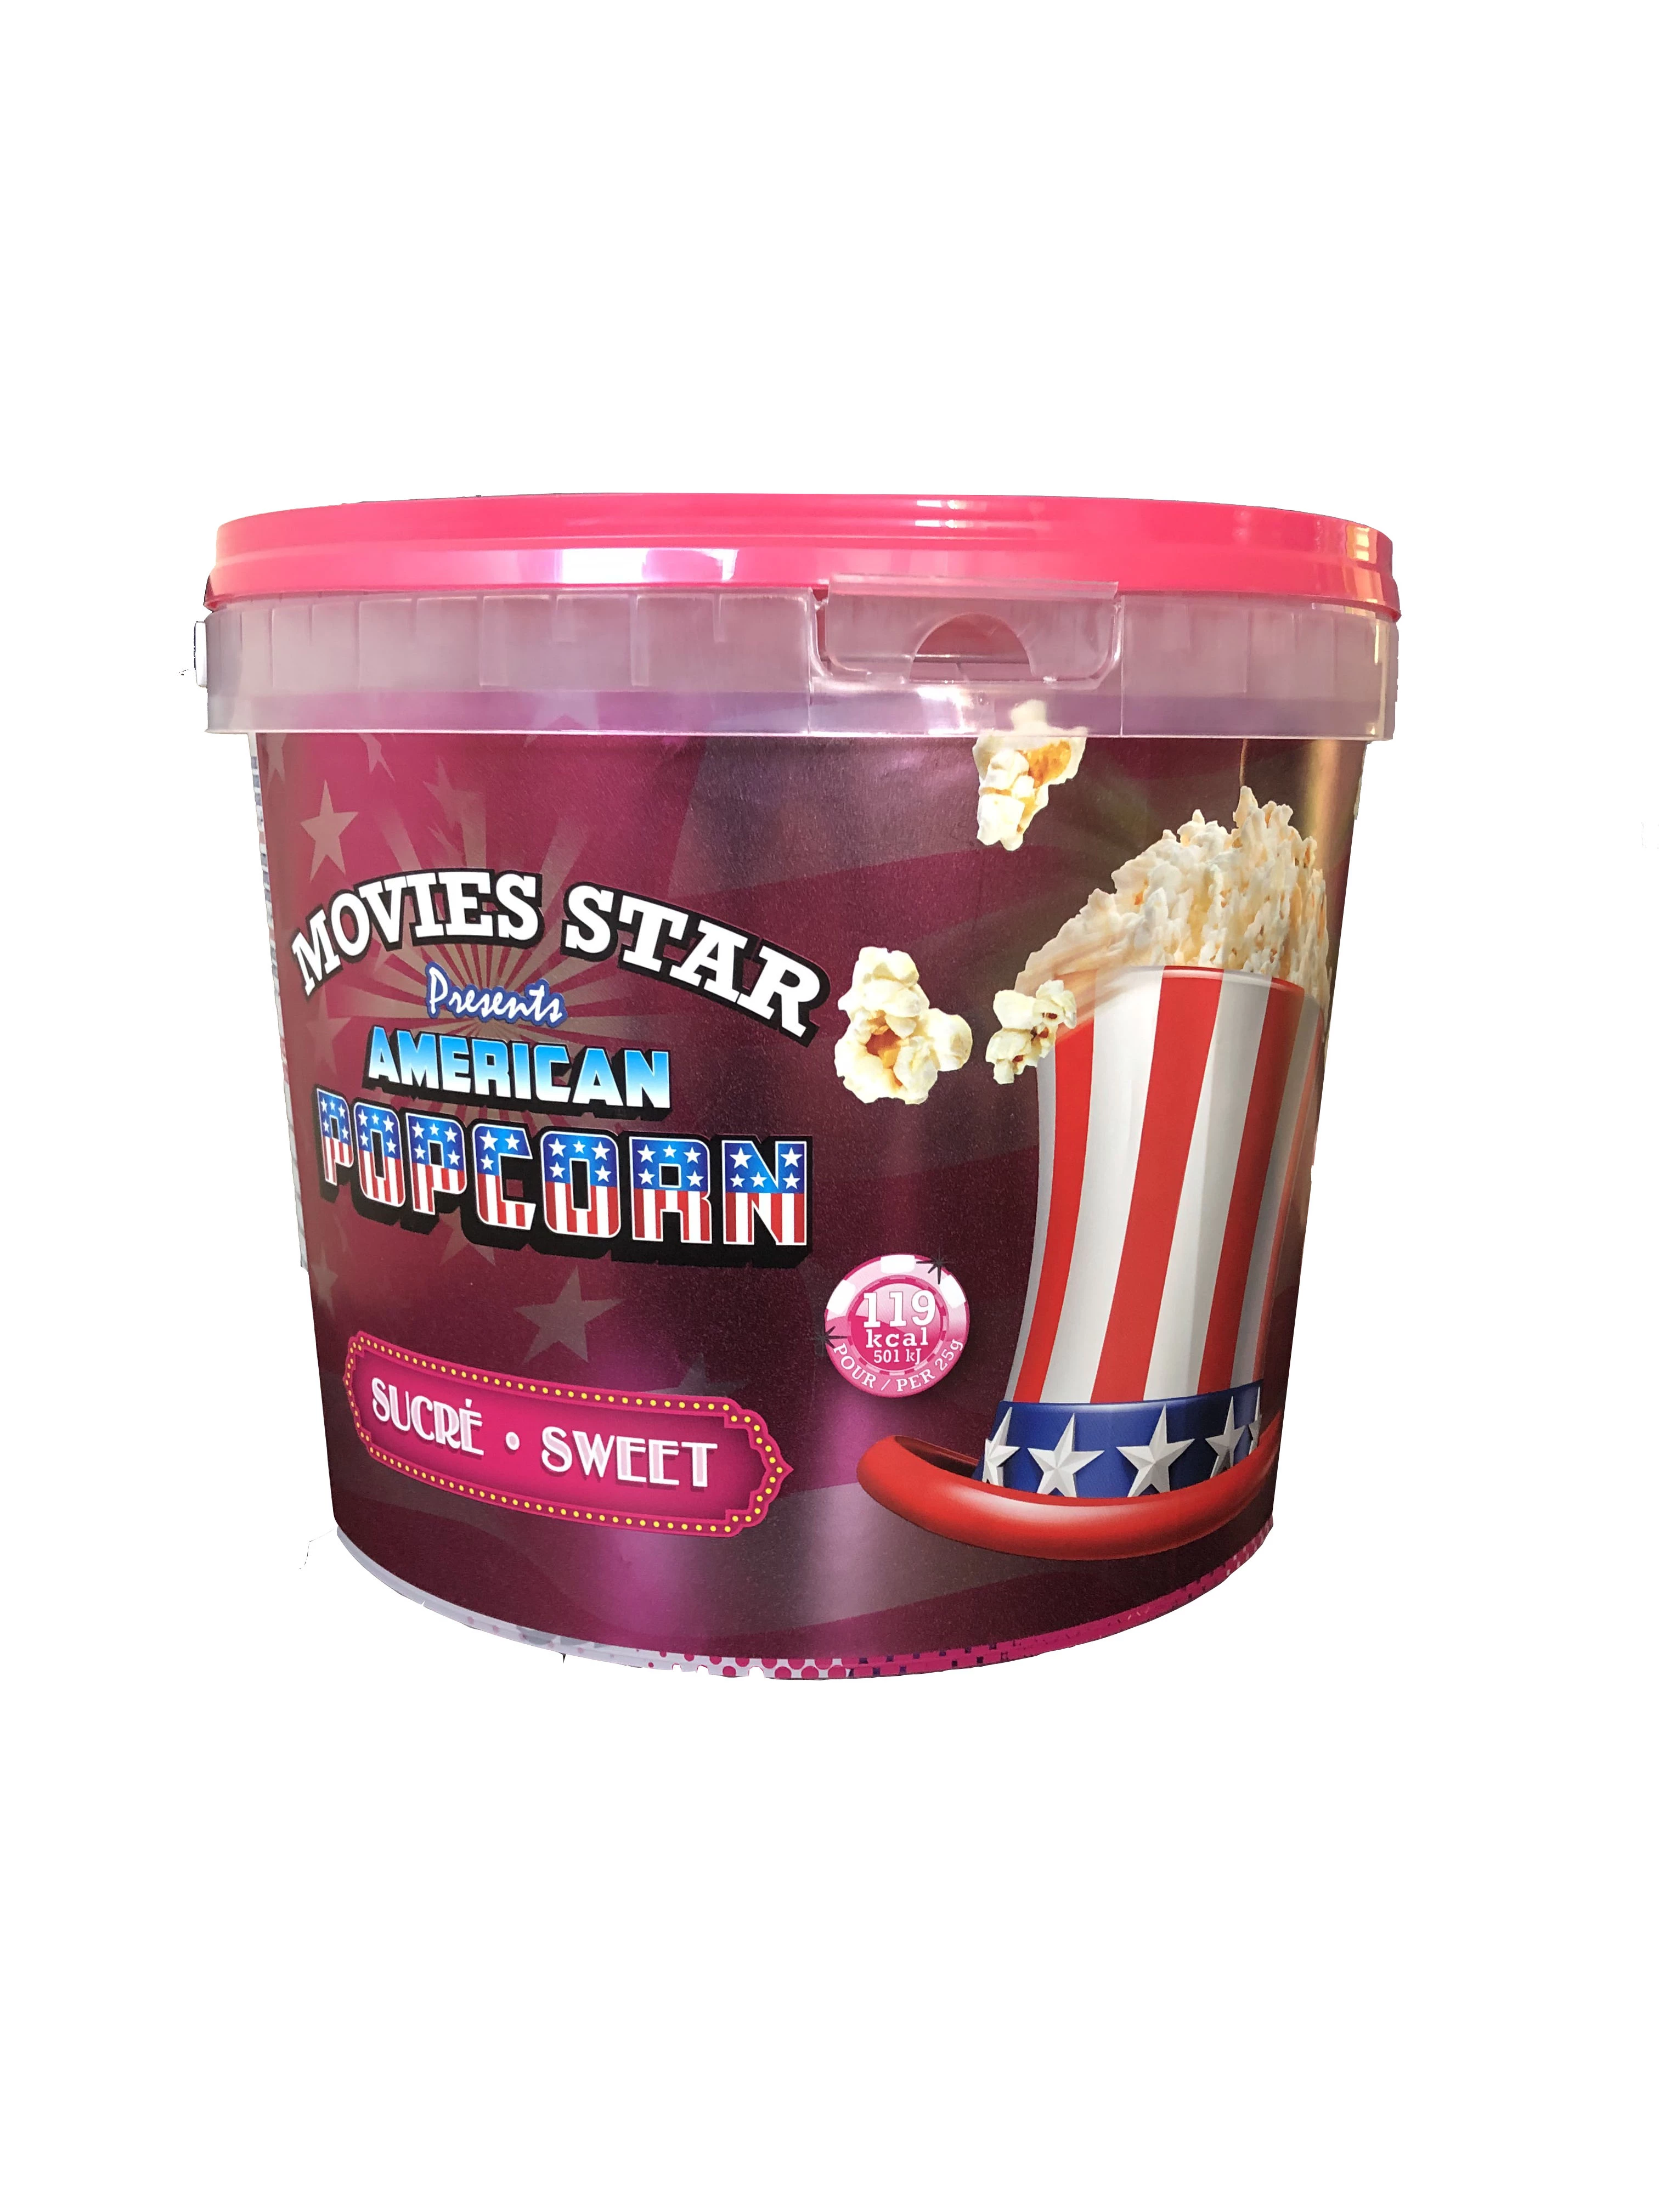 Secchiello per popcorn dolci, 250 g - MOVIES STAR